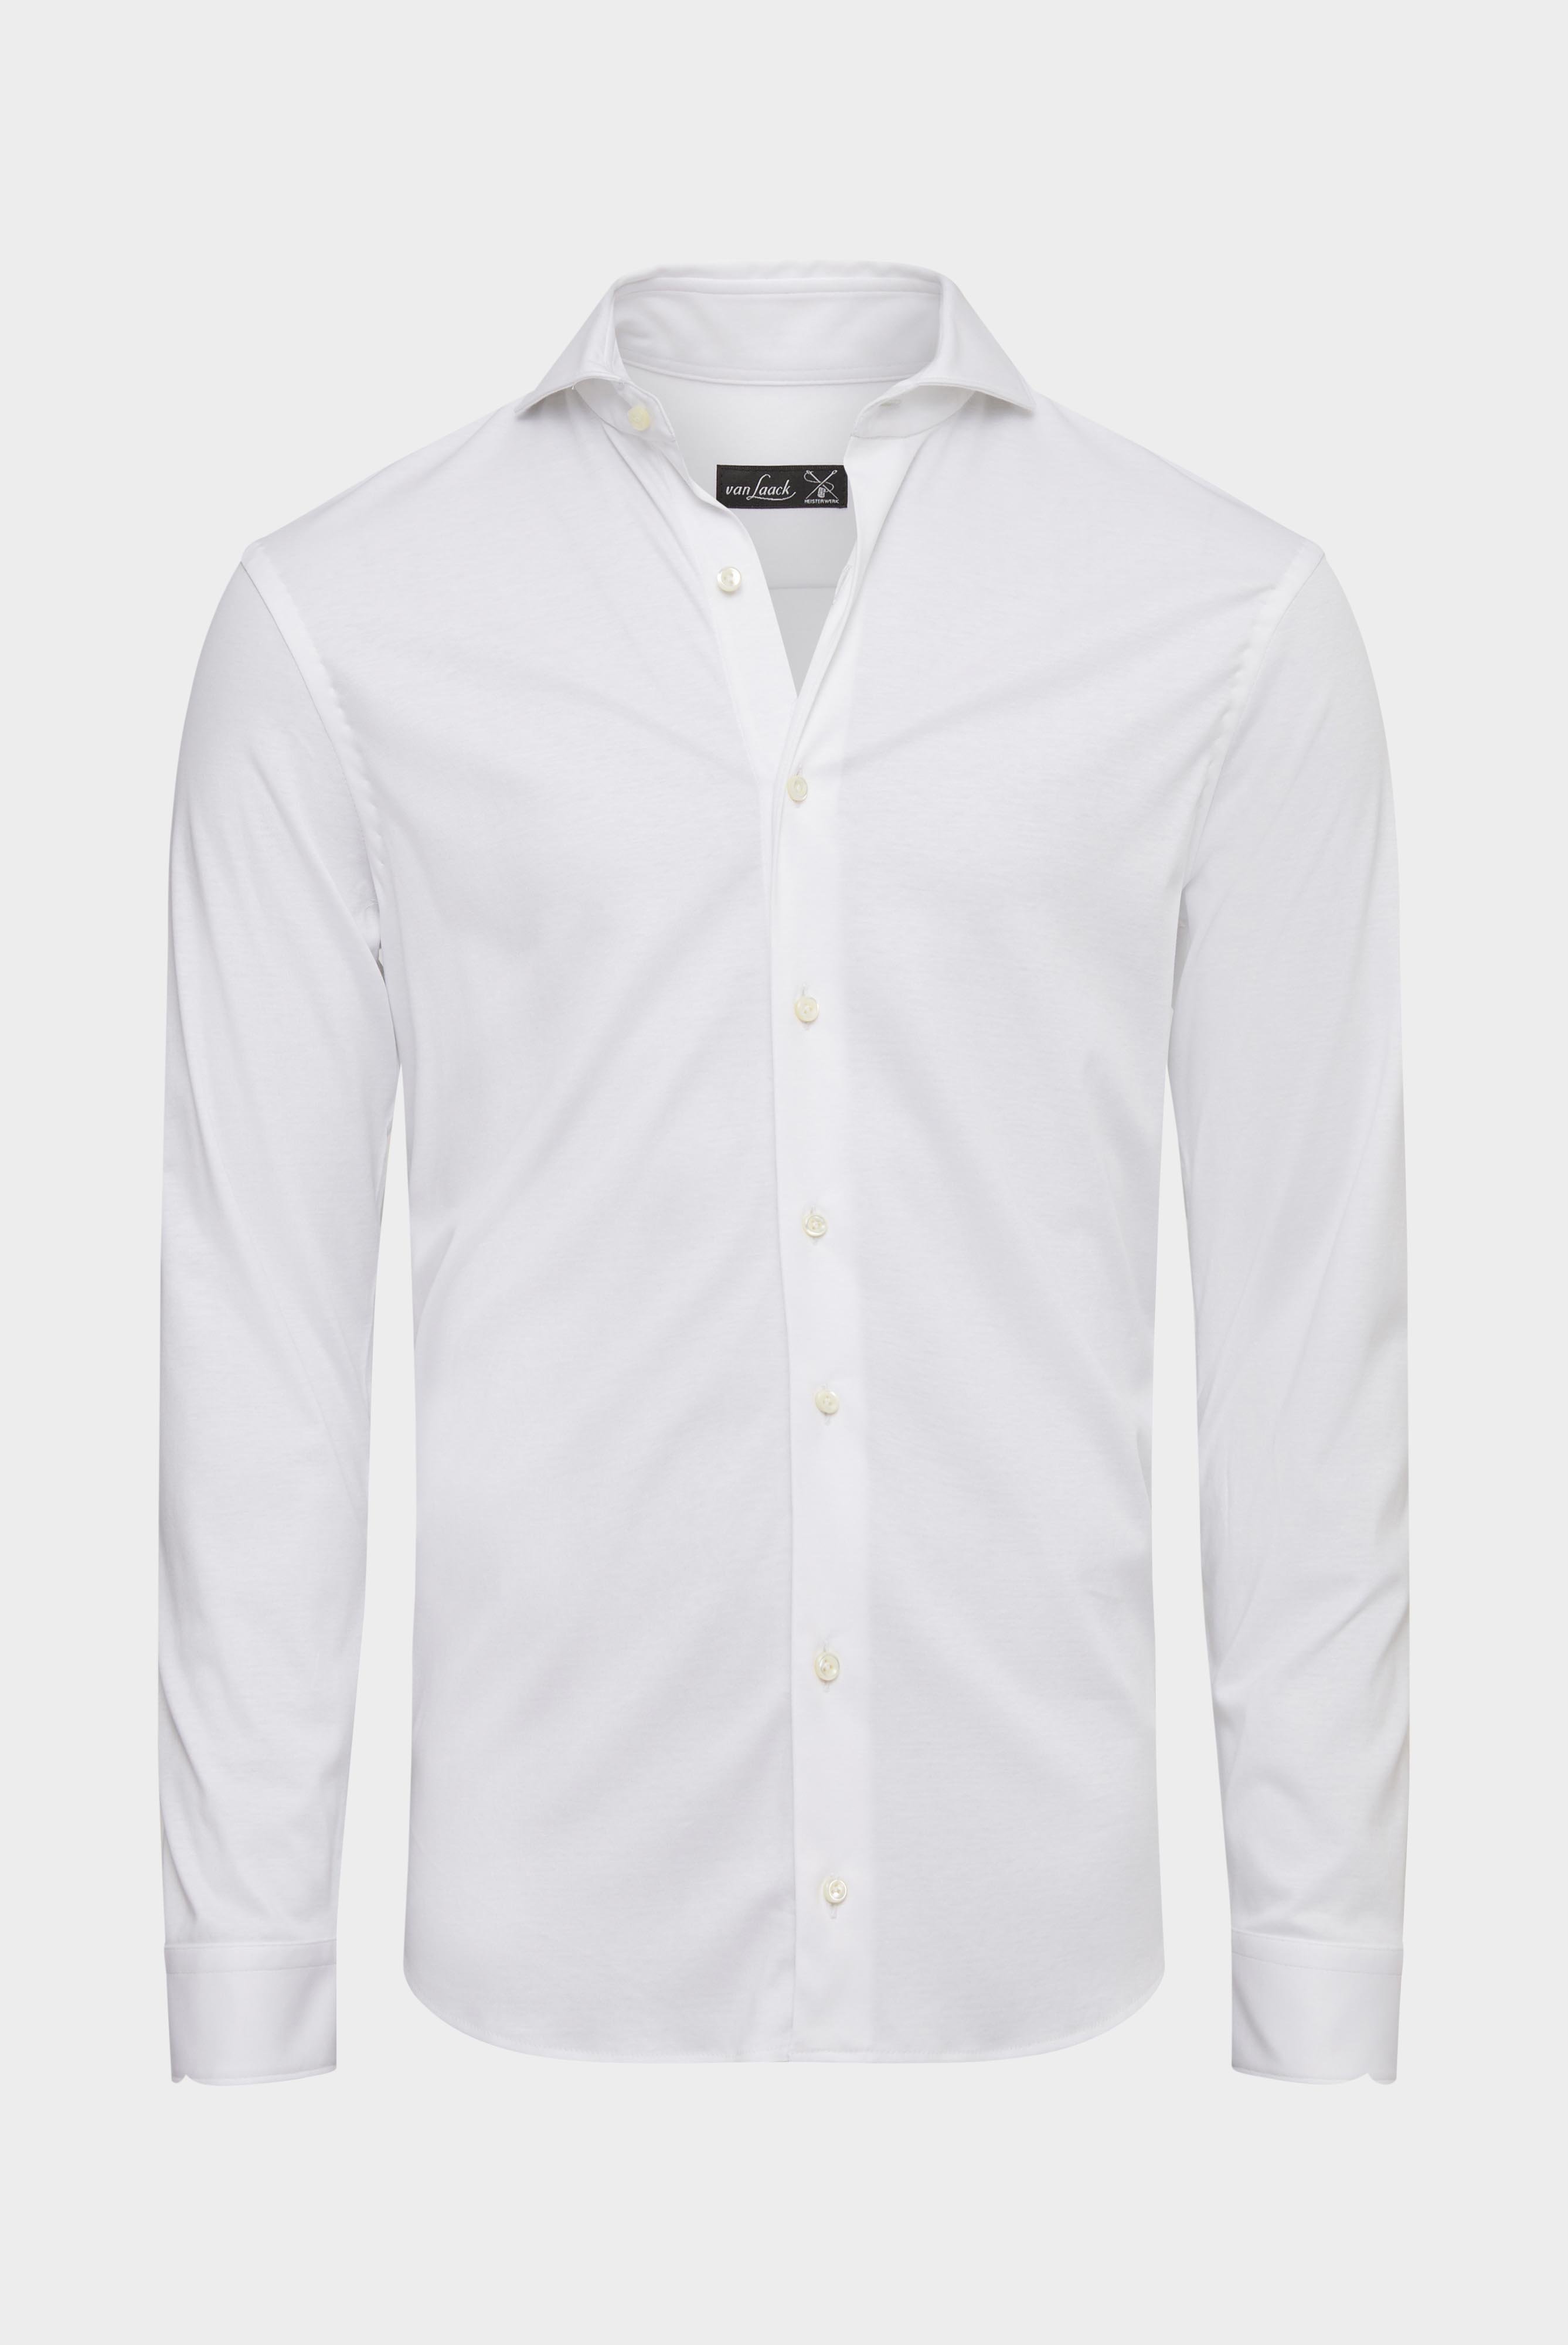 Jersey Hemden+Jersey Hemd aus Schweizer Baumwolle Slim Fit+20.1682.UC.180031.000.XS